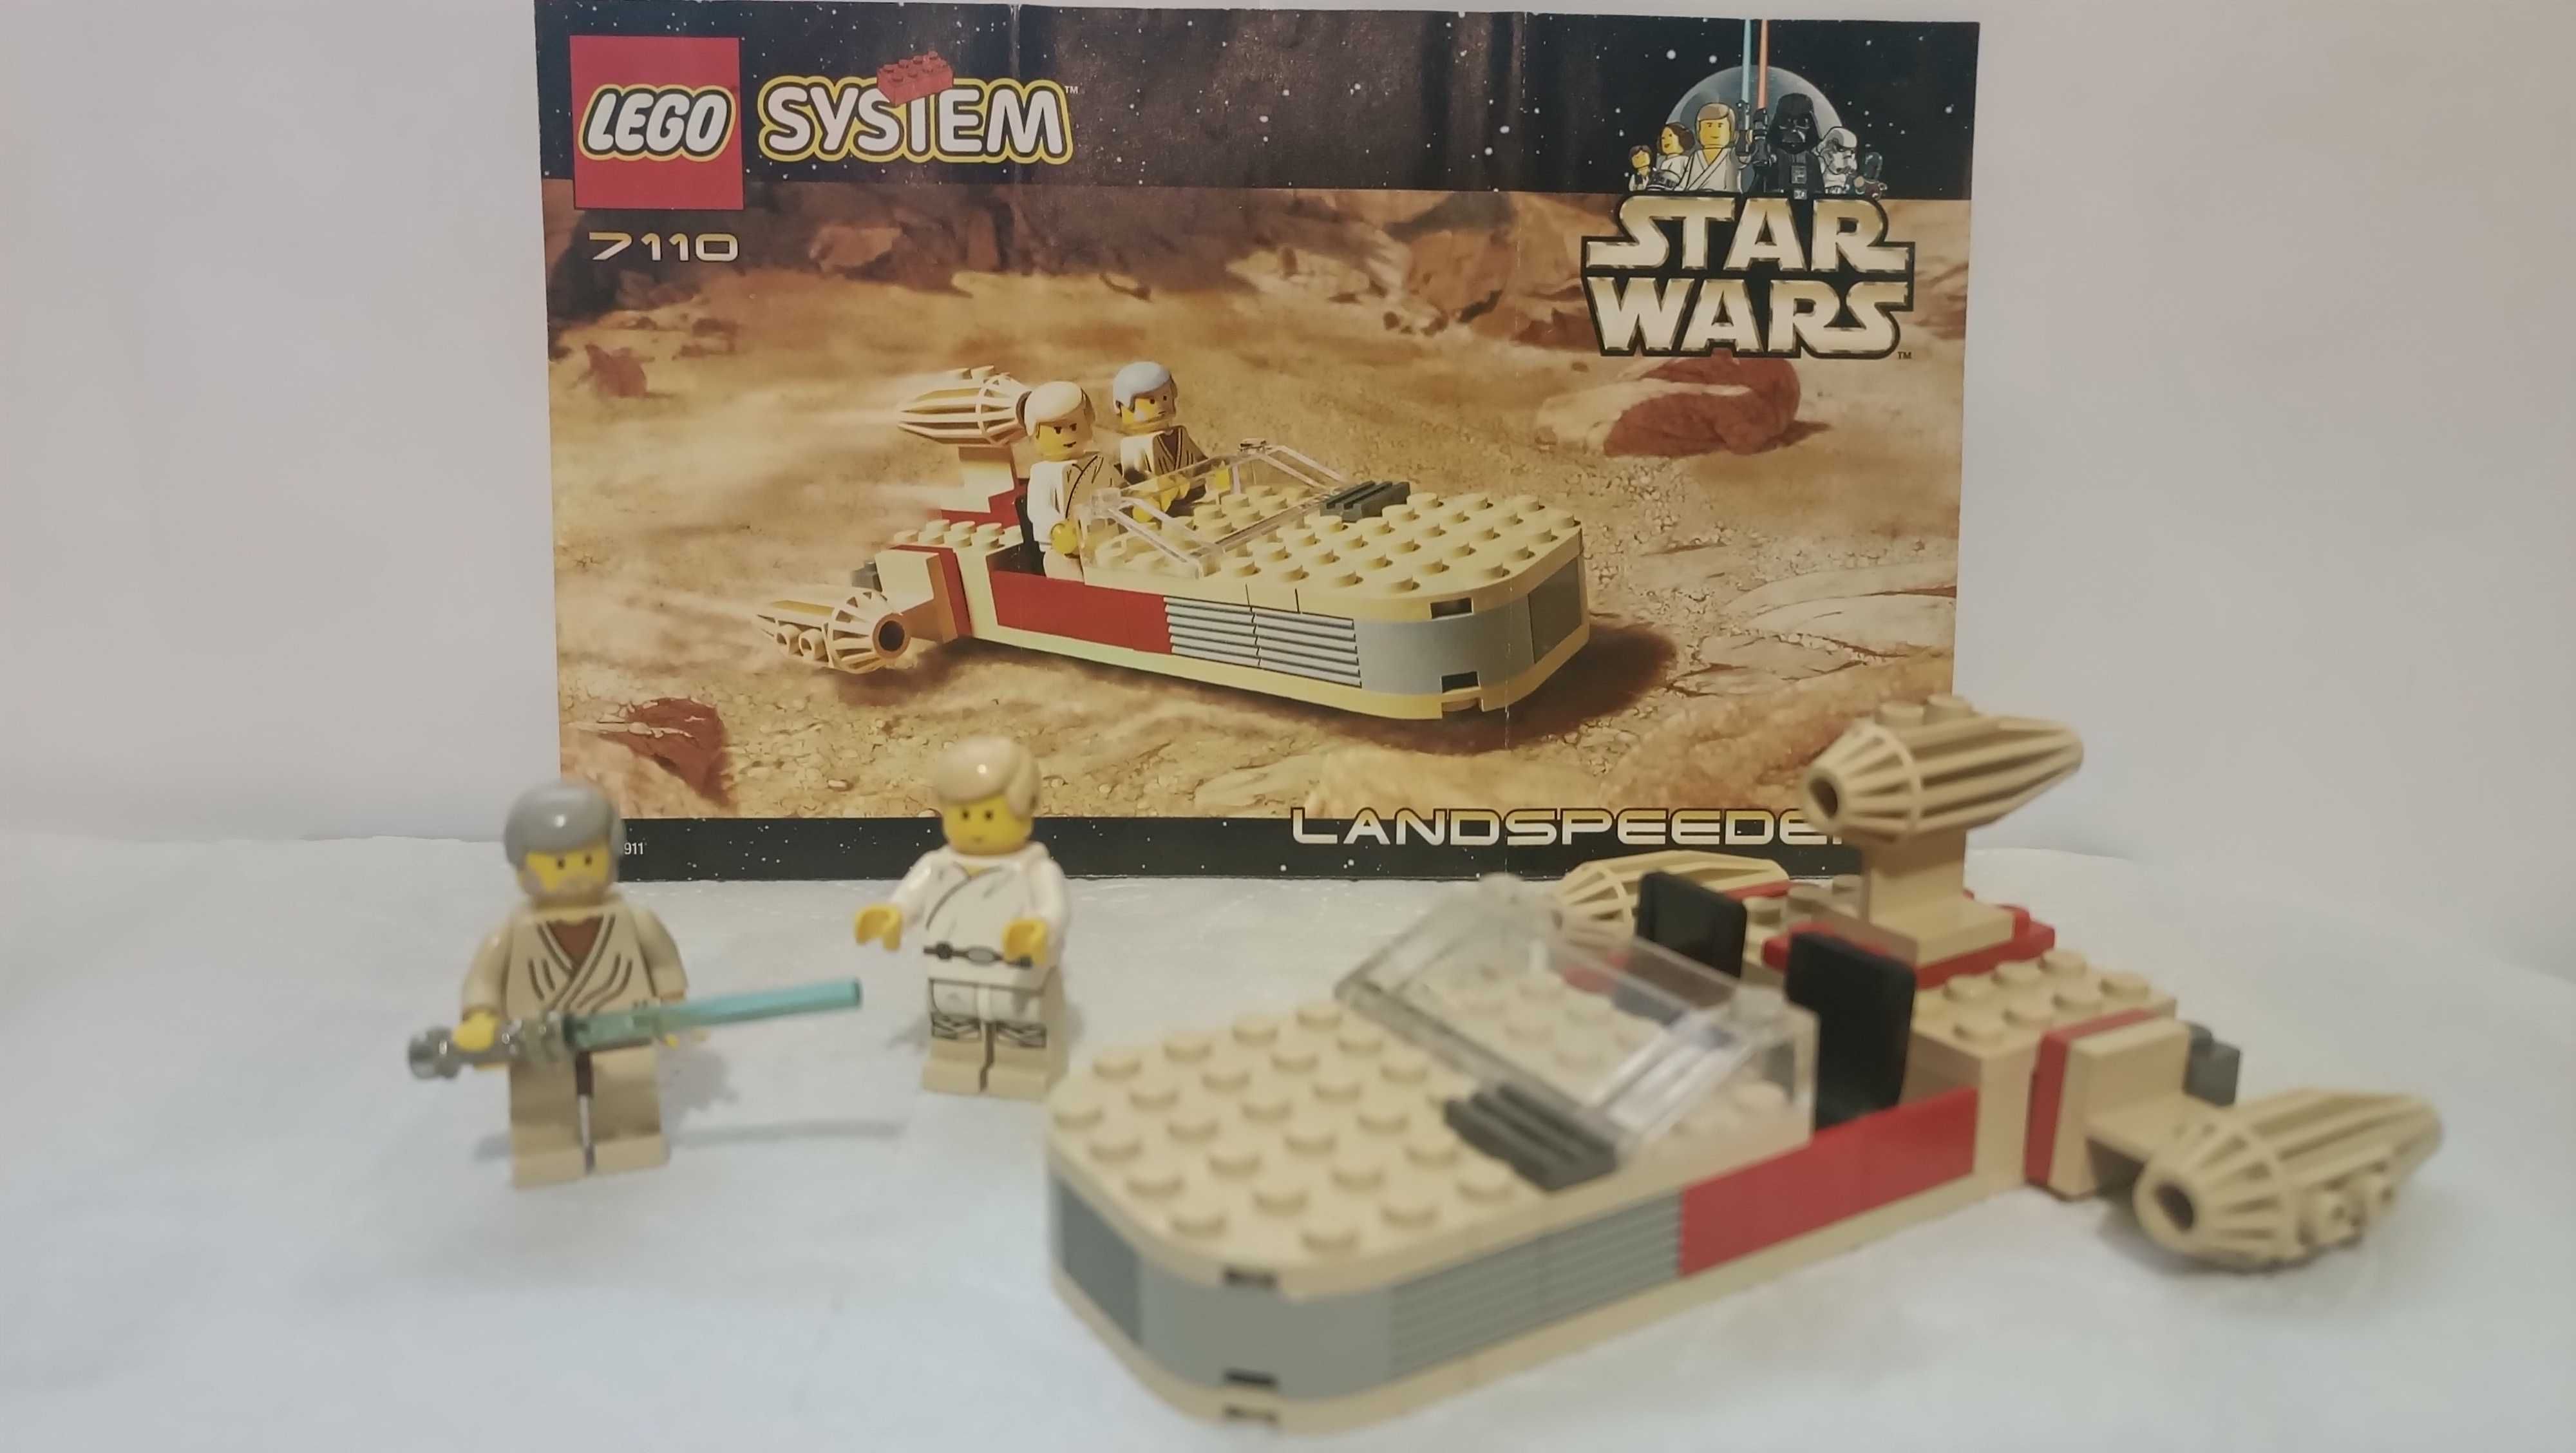 LEGO system Star Wars nr 7110